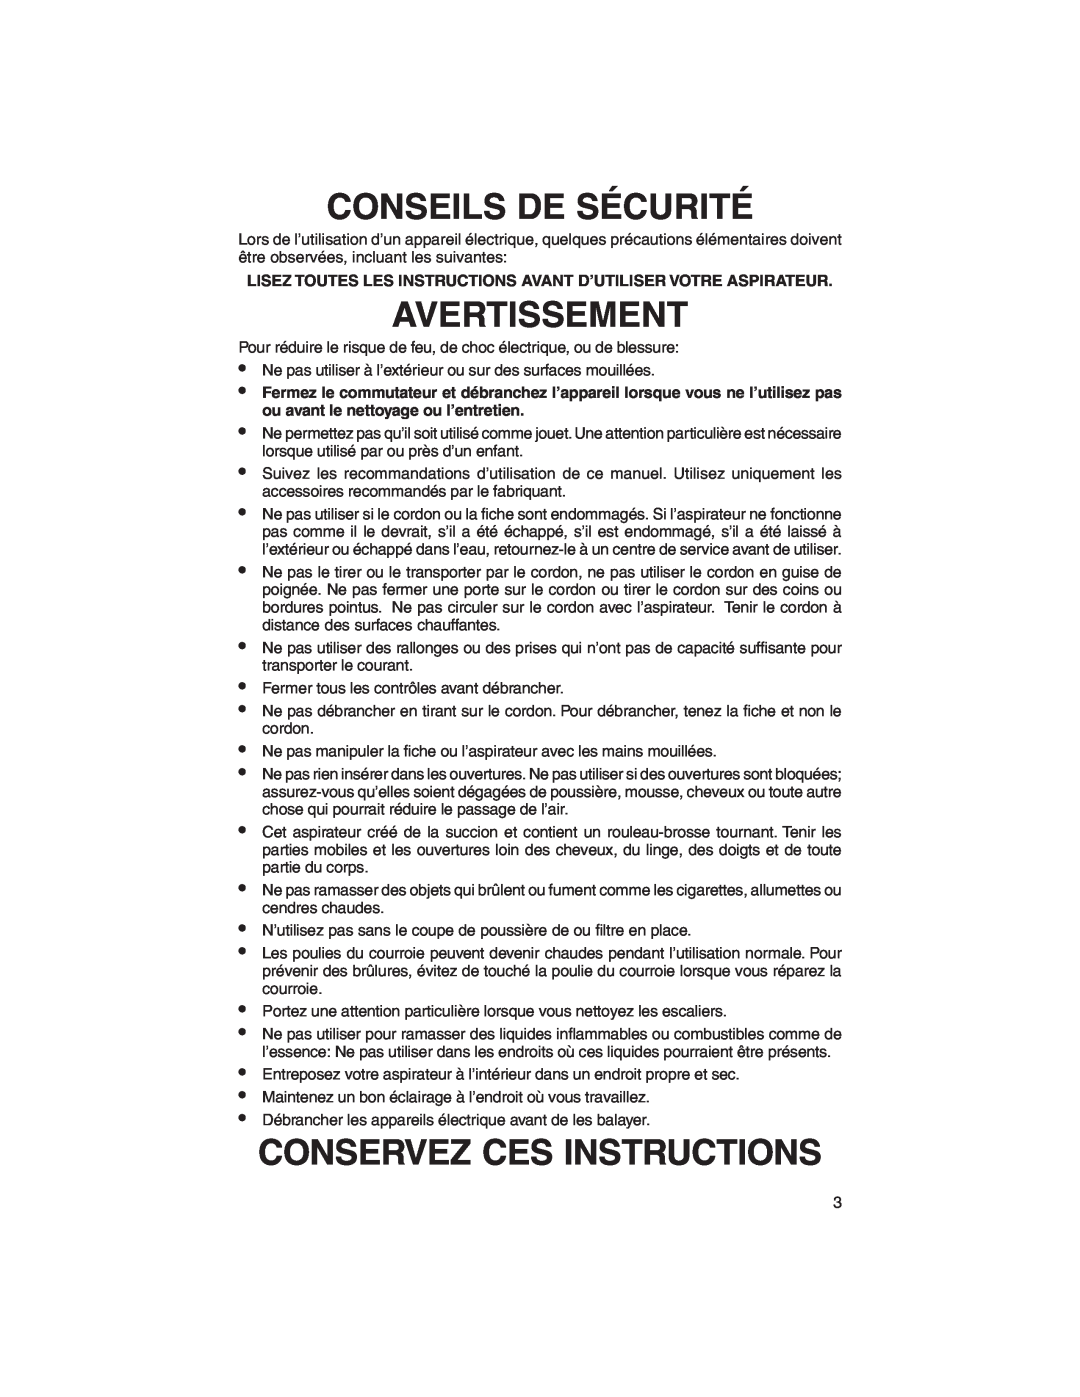 Eureka 790 warranty Conseils De Sécurité, Avertissement, Conservez Ces Instructions 